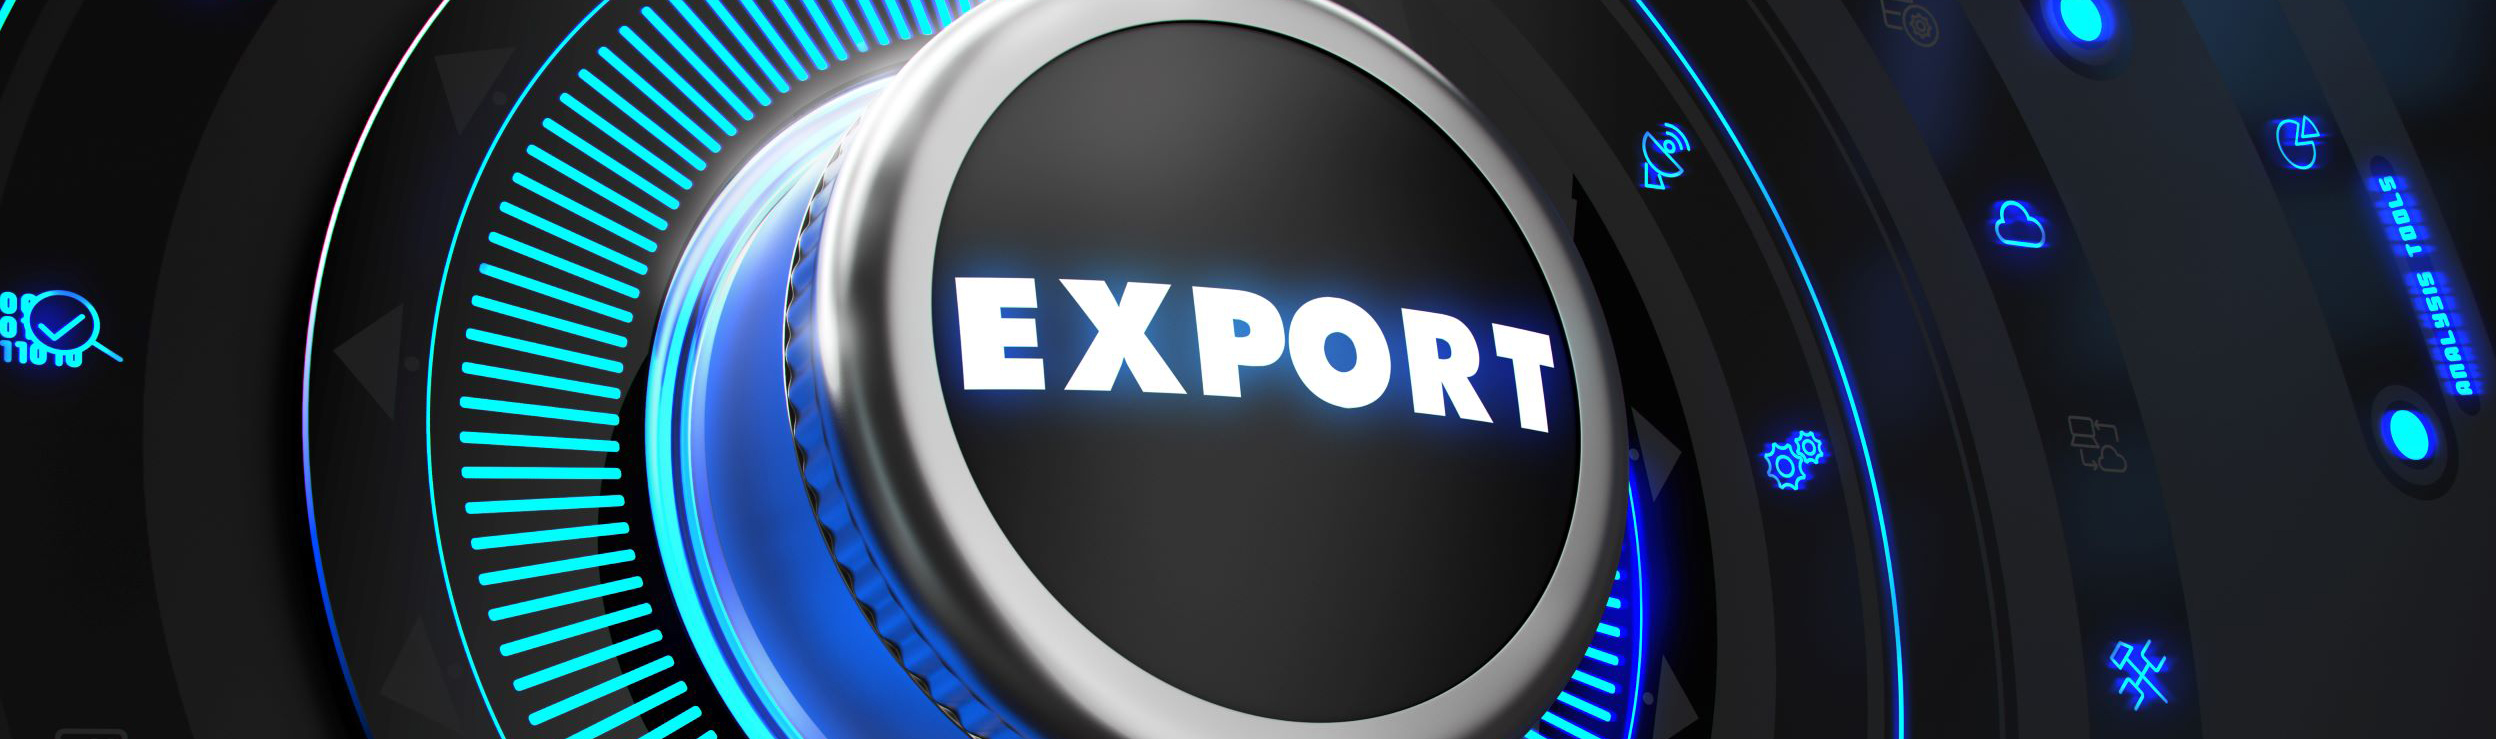 export controls